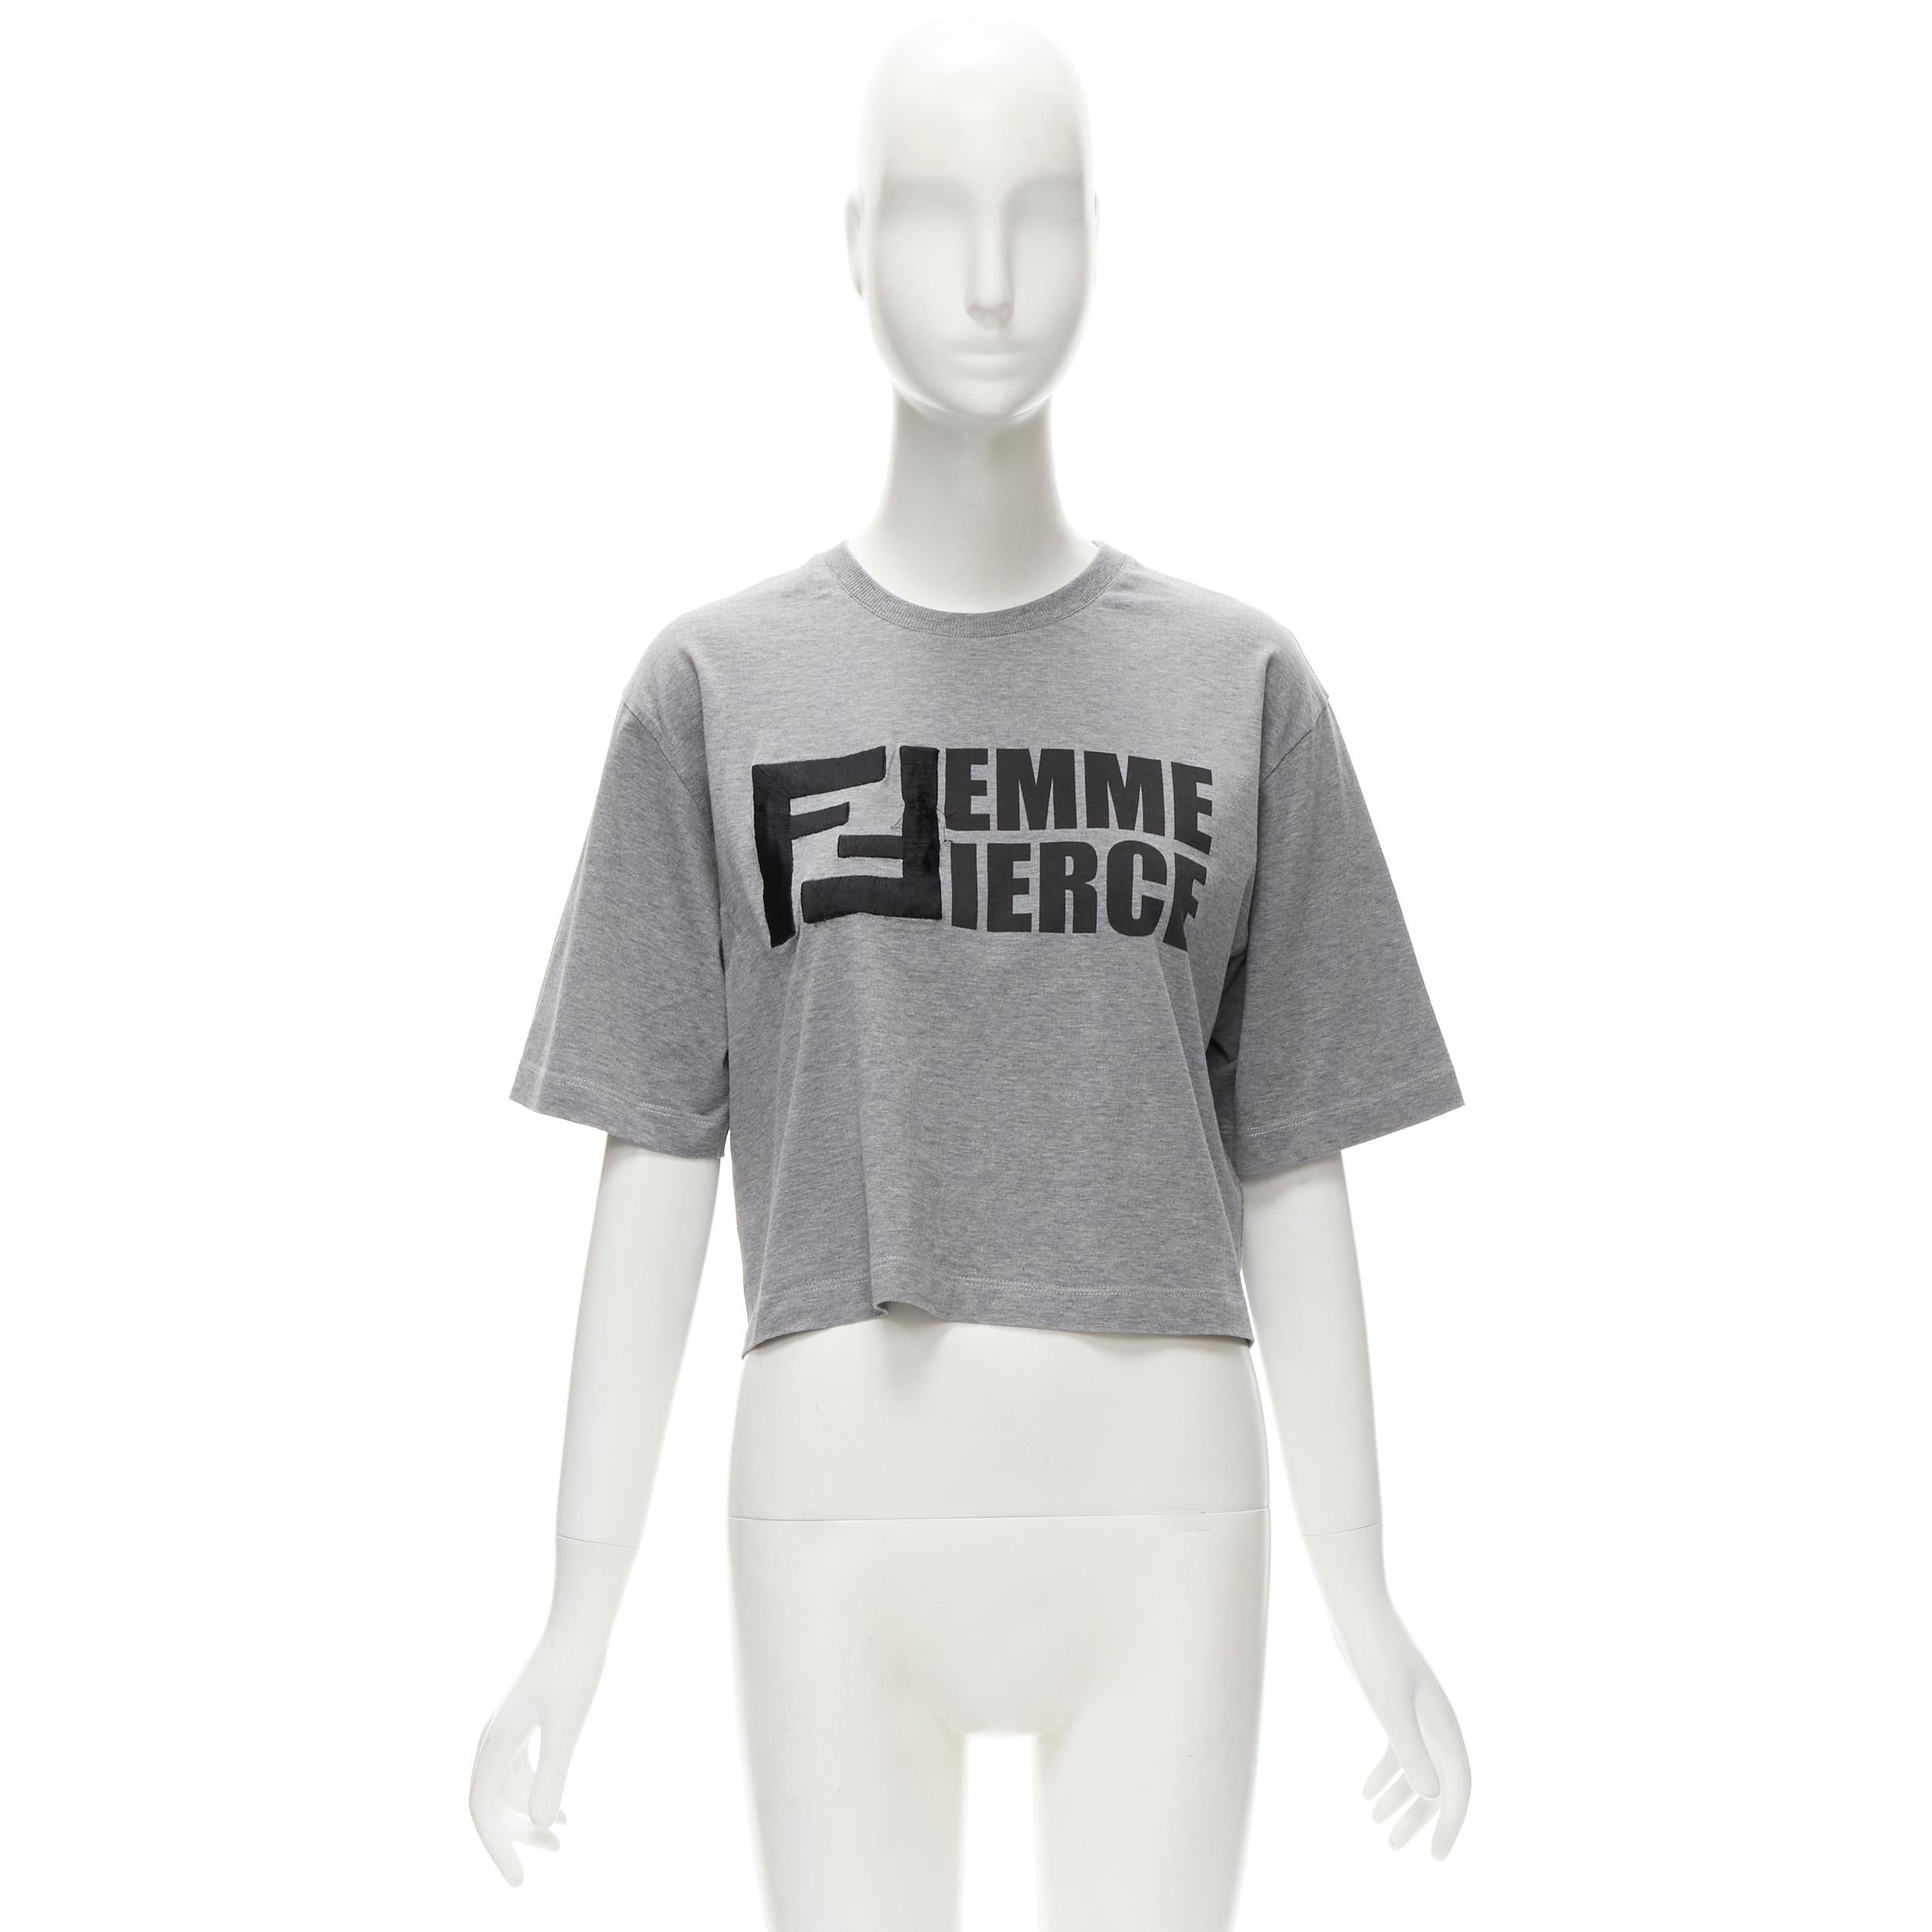 FENDI Femme Fierce embroidery FF logo grey cropped cotton tshirt  For Sale 1